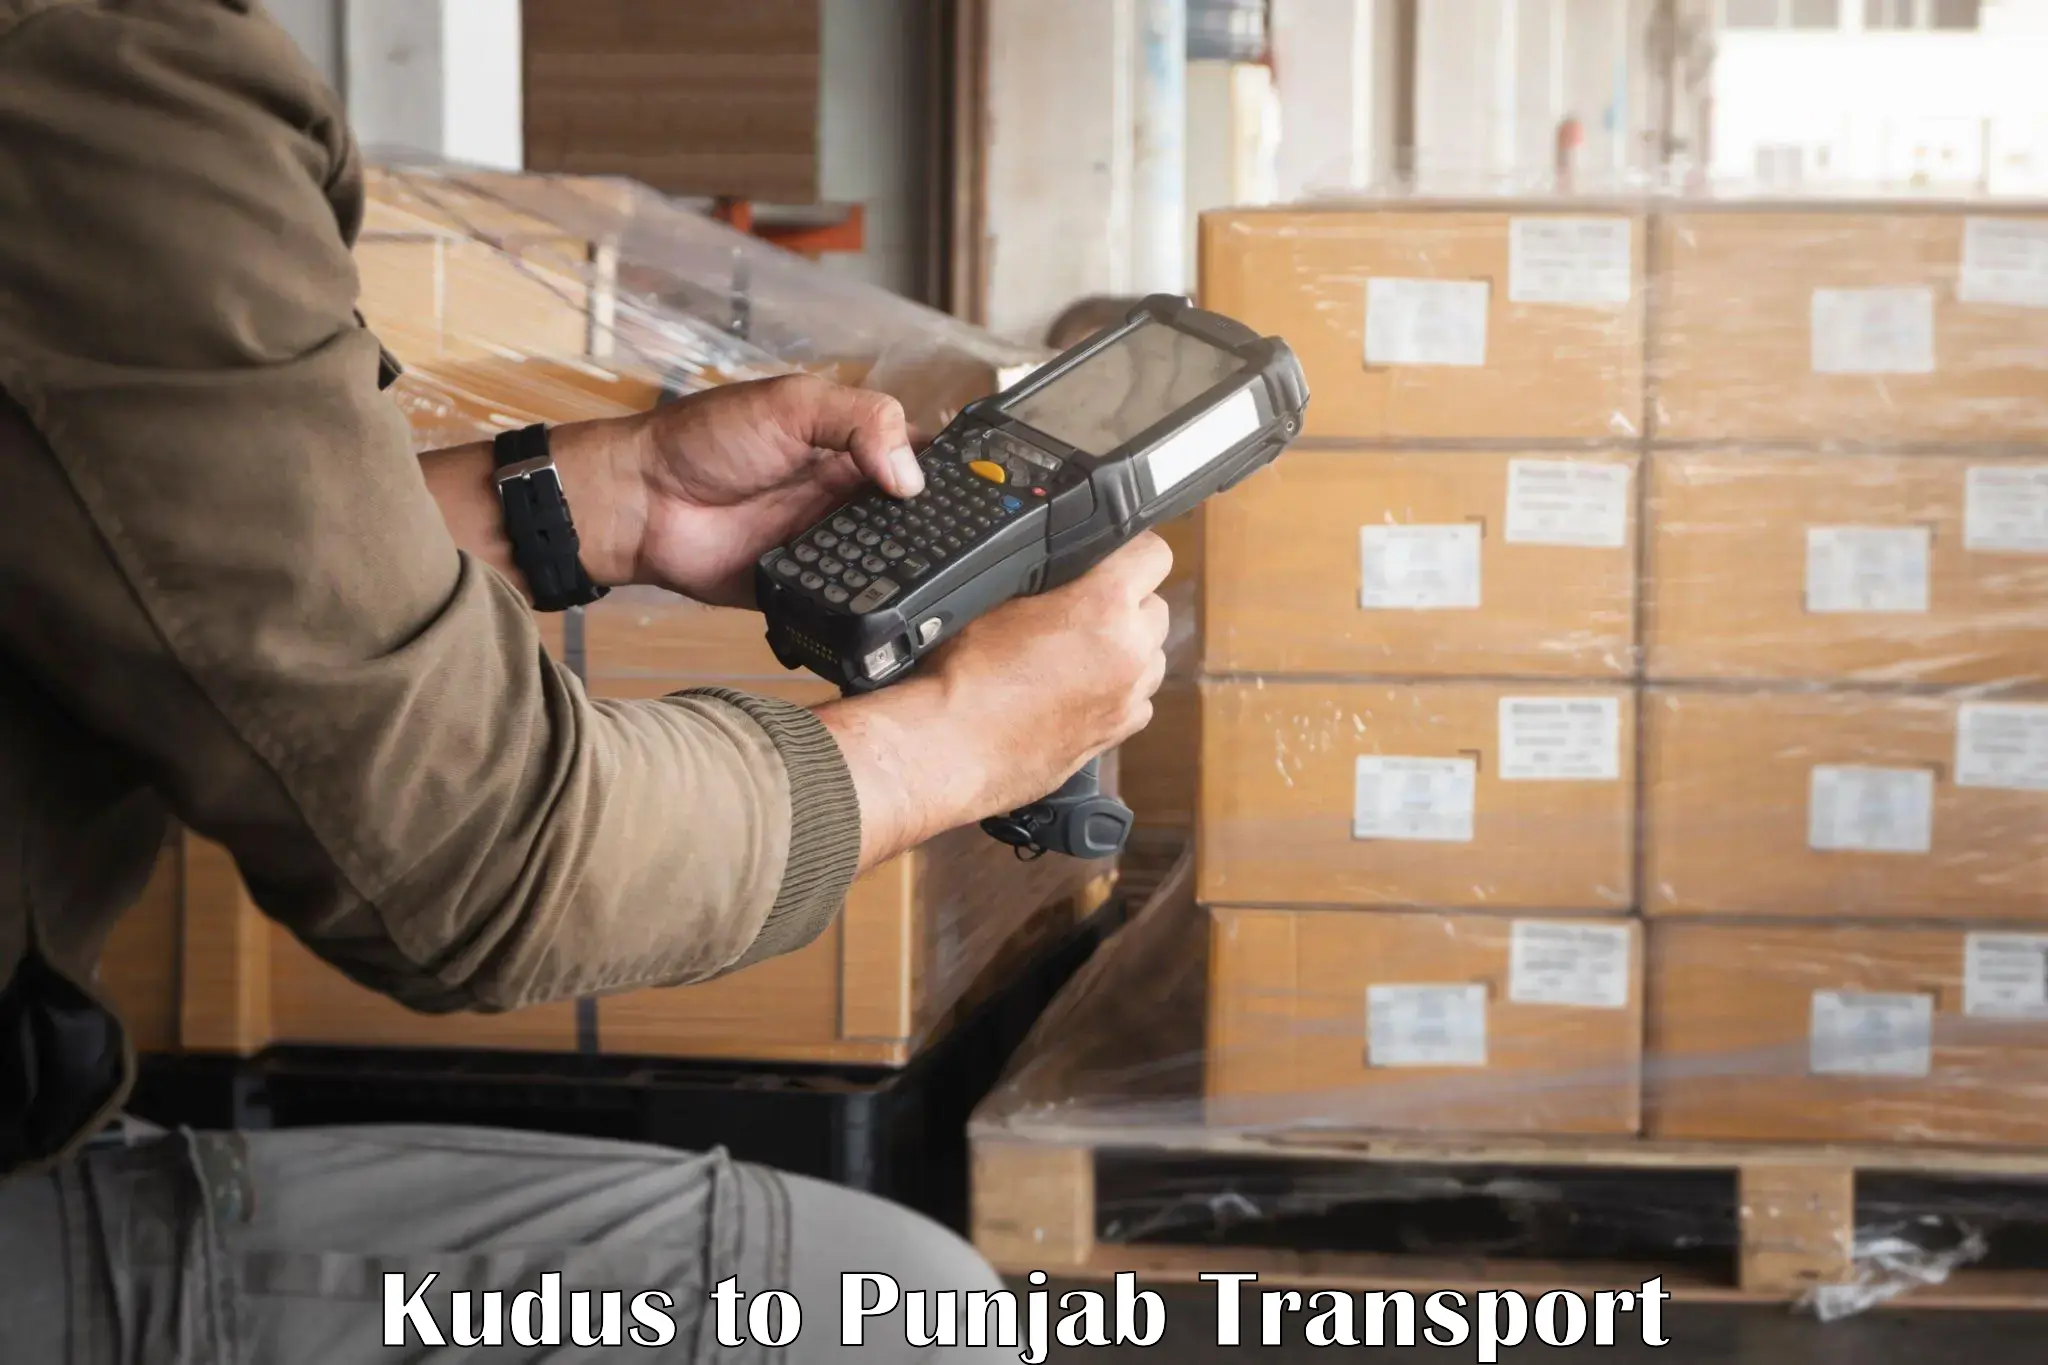 Pick up transport service Kudus to Punjab